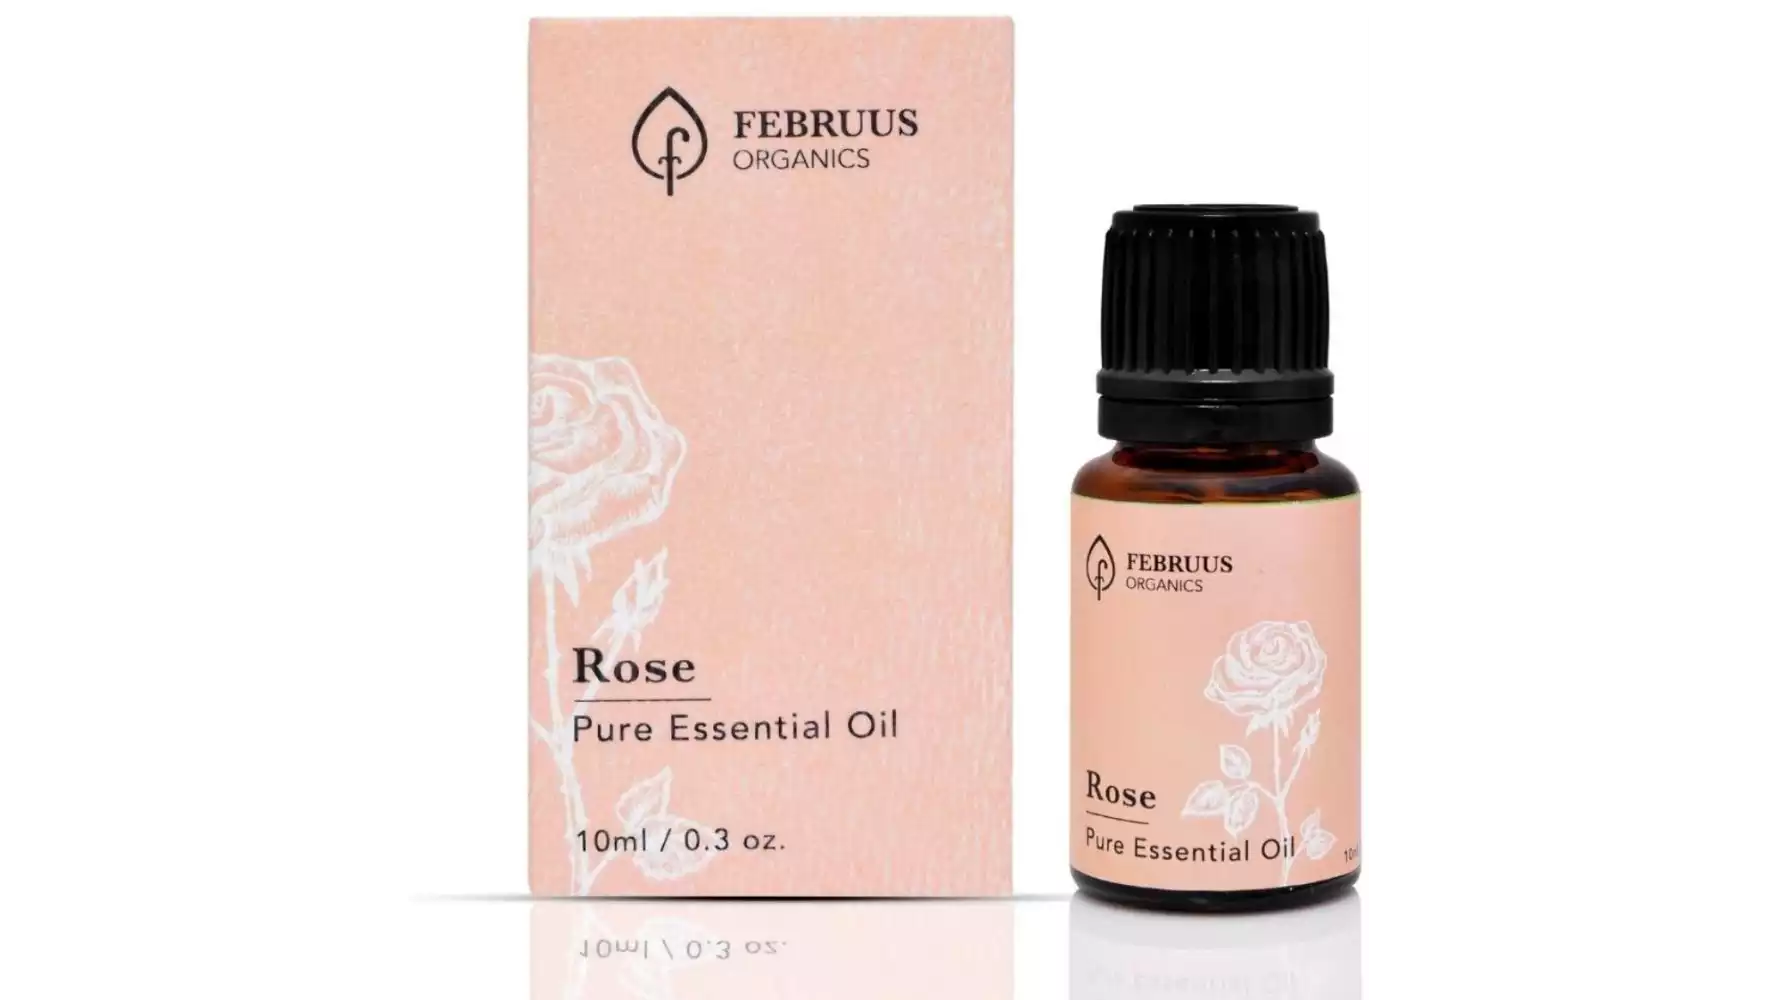 Februus Organics Rose Essential Oil (10ml)